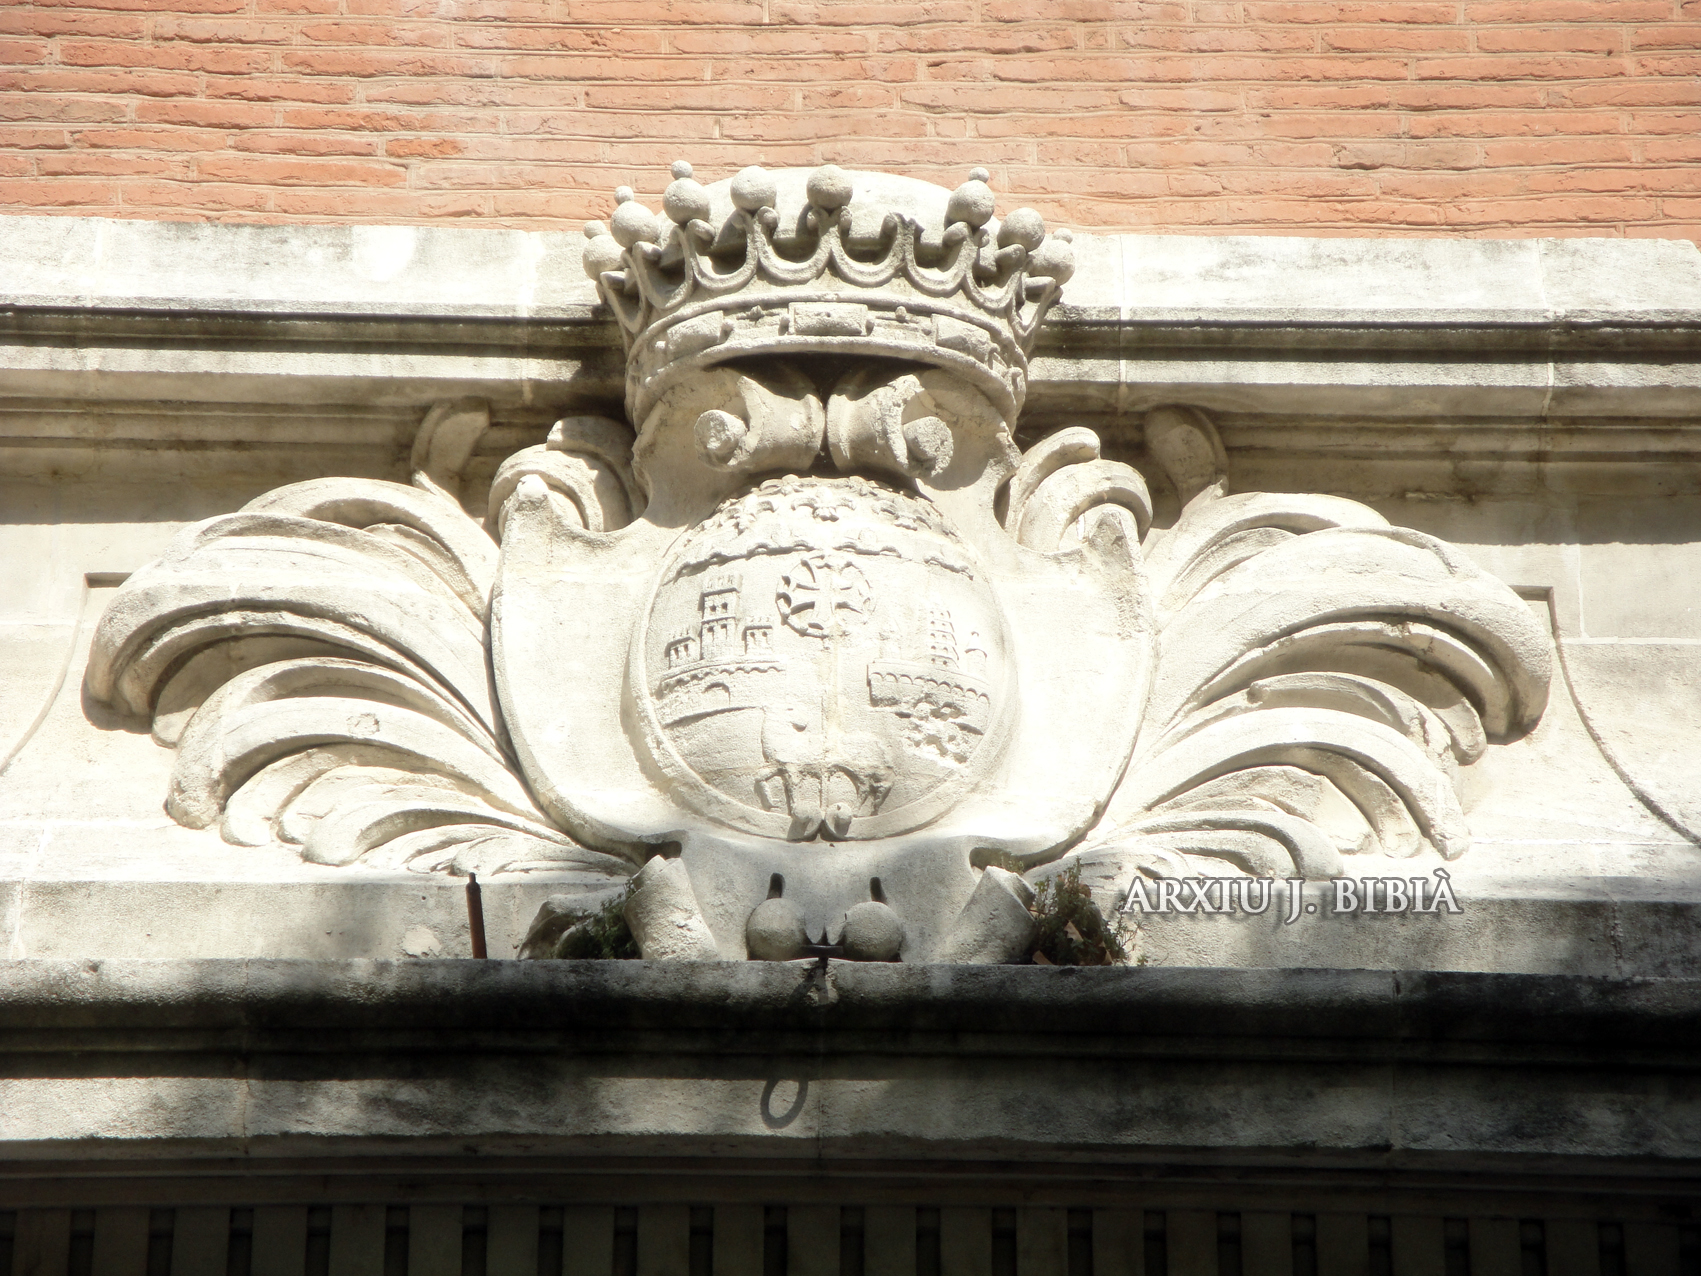 09.02.2011 Una altra representació de l'escut a la façana del col·legi de belles arts.  Tolosa del Llenguadoc -  Jordi Bibià